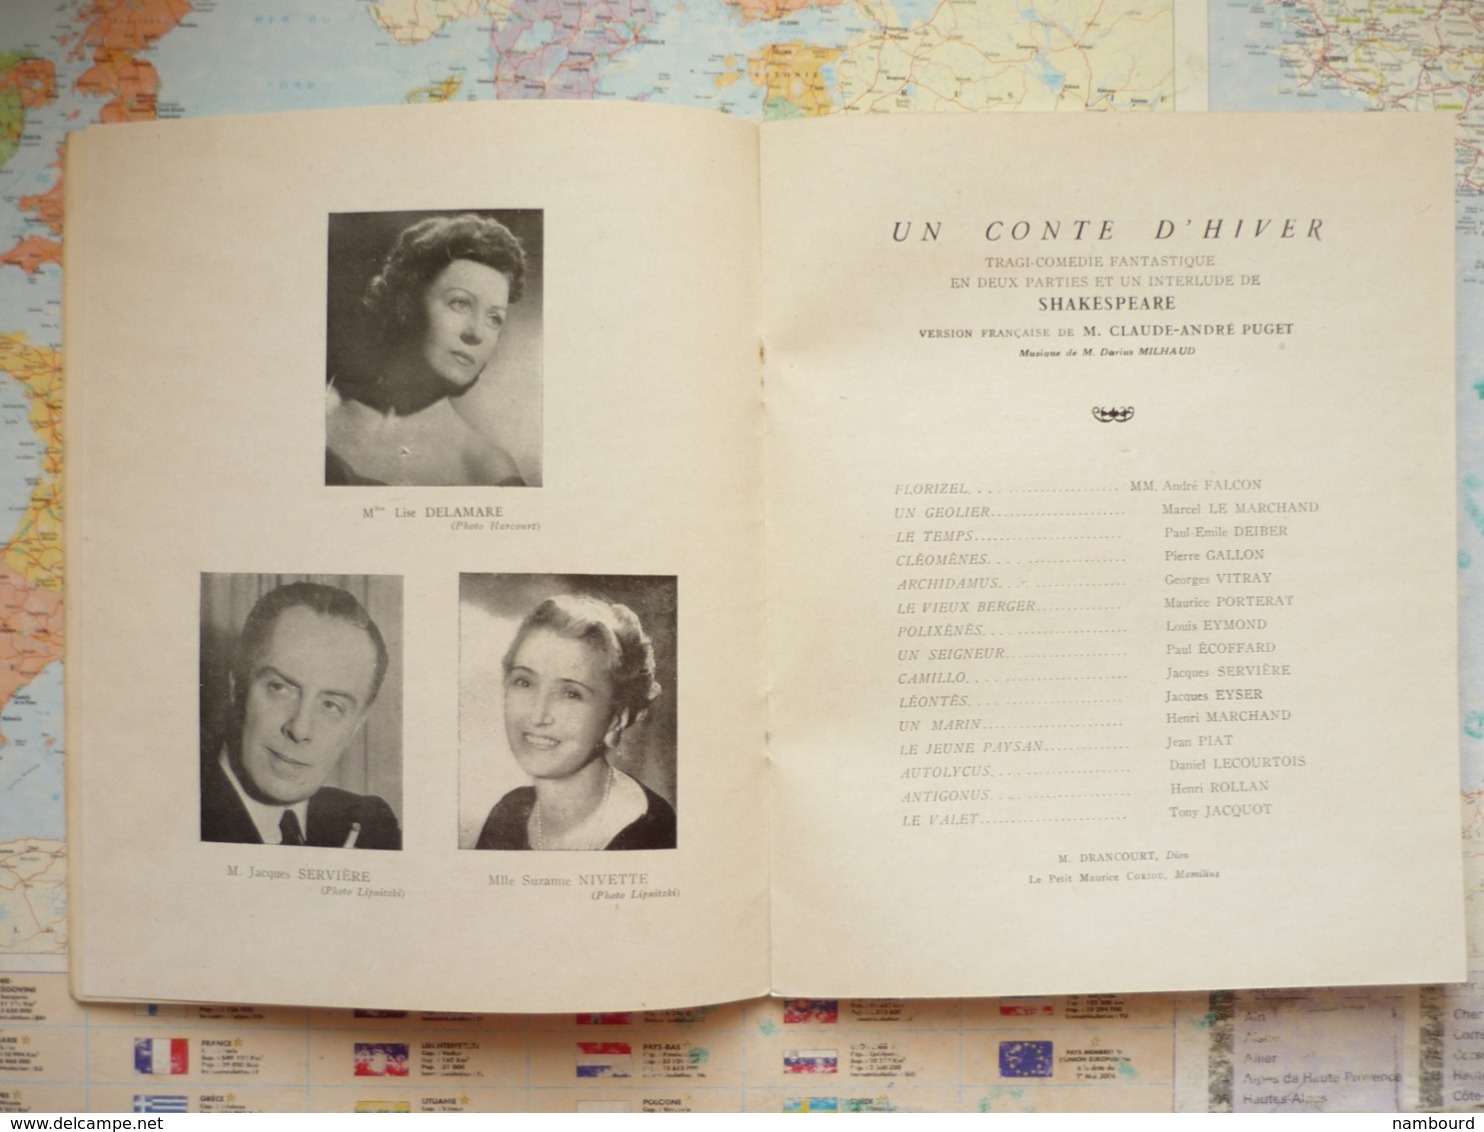 Un Conte D'Hiver / Shakespeare Soirée Du Samedi 10 Mars 1951 à La Comédie Française - Programmes